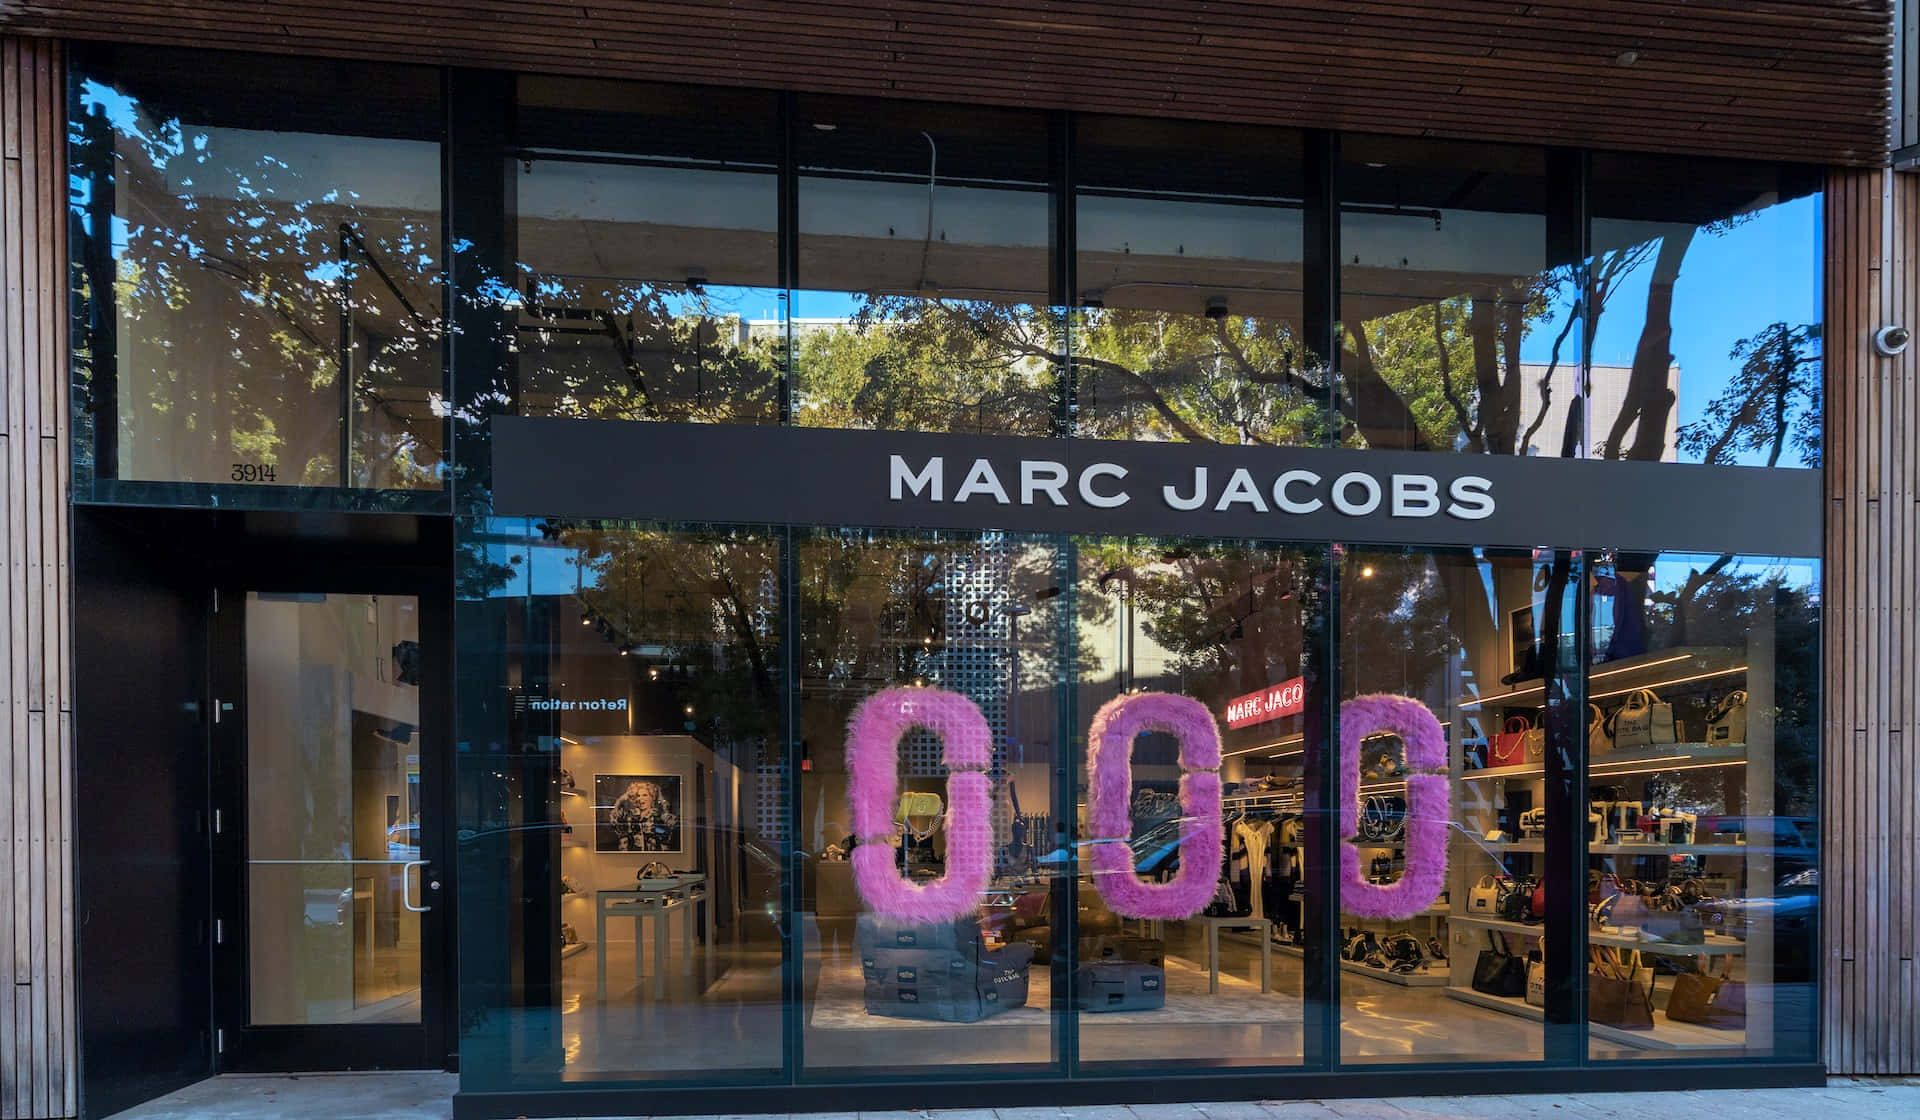 Kreativchef Marc Jacobs Utstrålar Stil Och Klass.